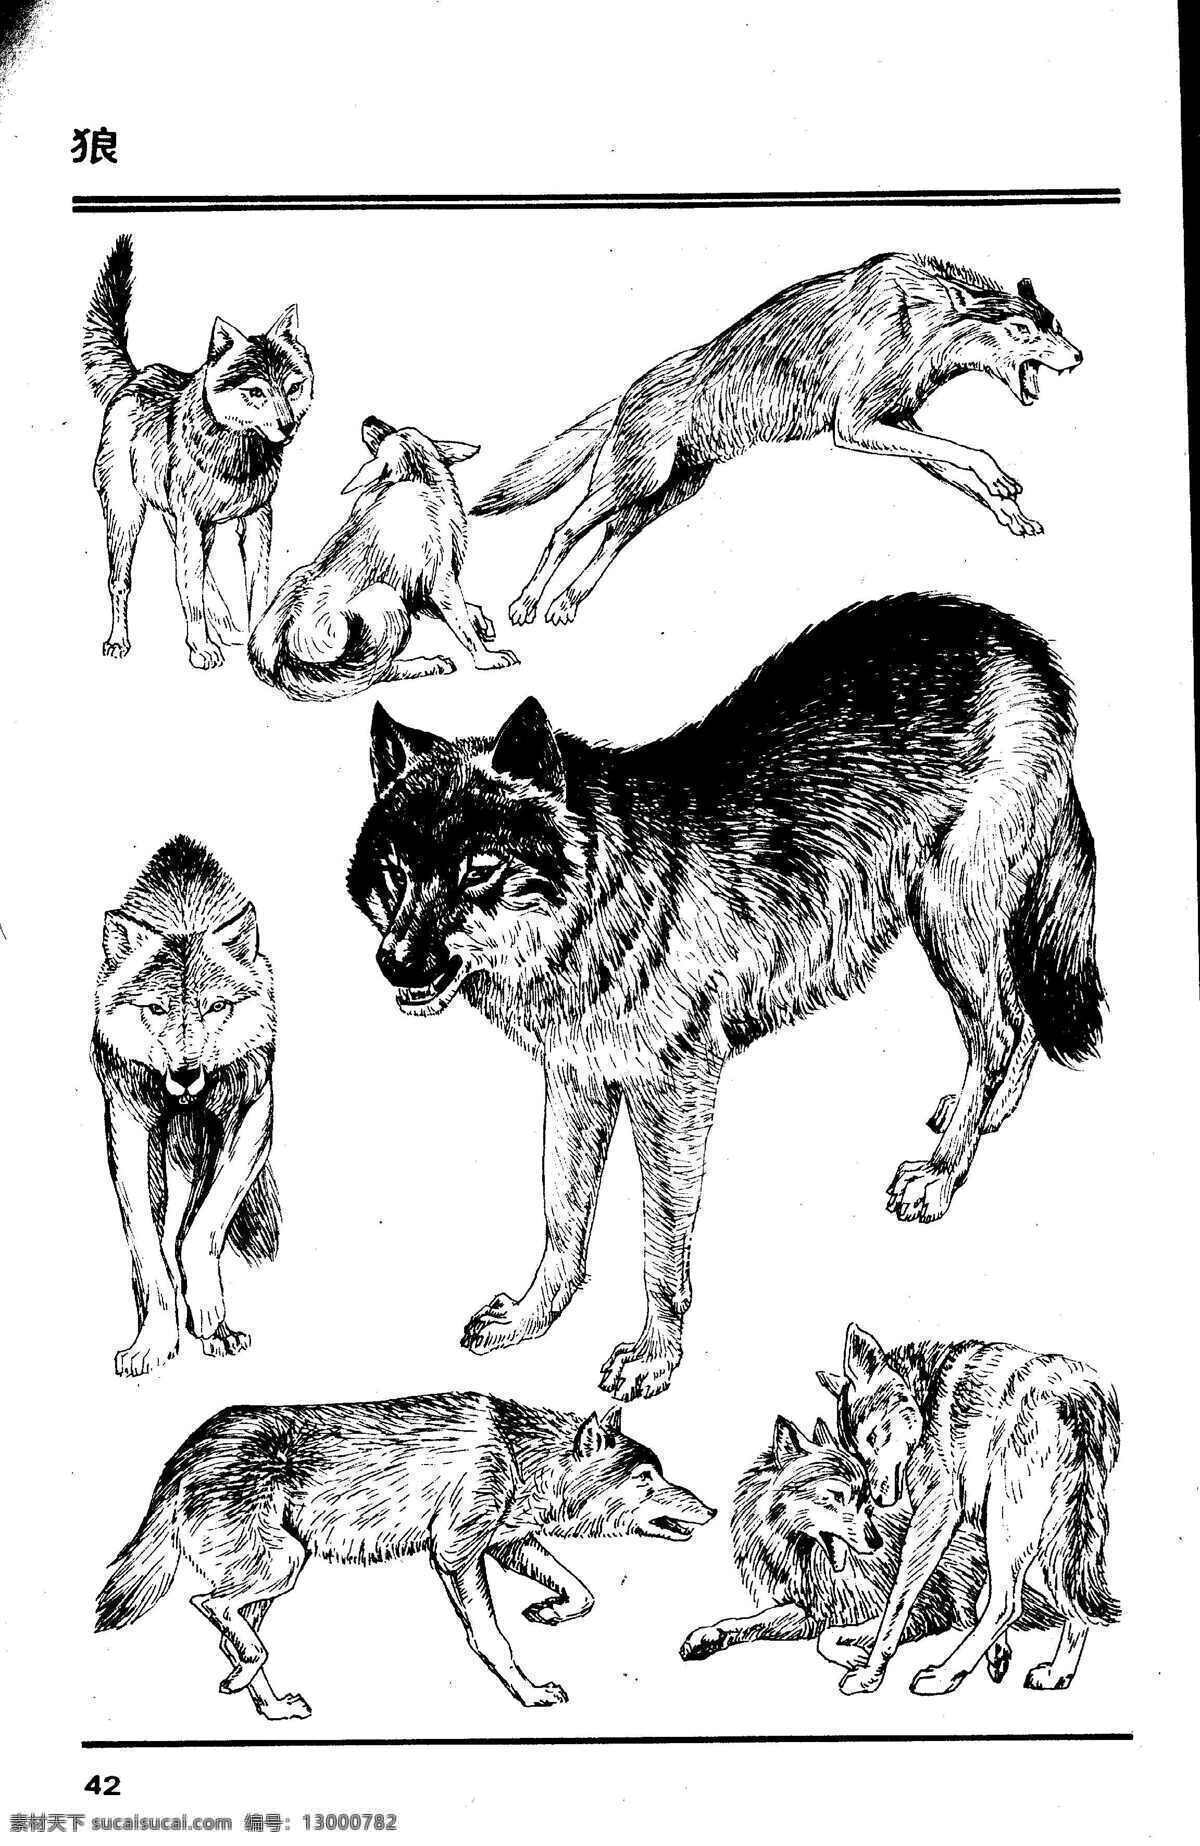 百兽谱 狼 百兽 兽 家禽 猛兽 动物 白描 线描 绘画 美术 禽兽 野生动物 百兽图 生物世界 设计图库